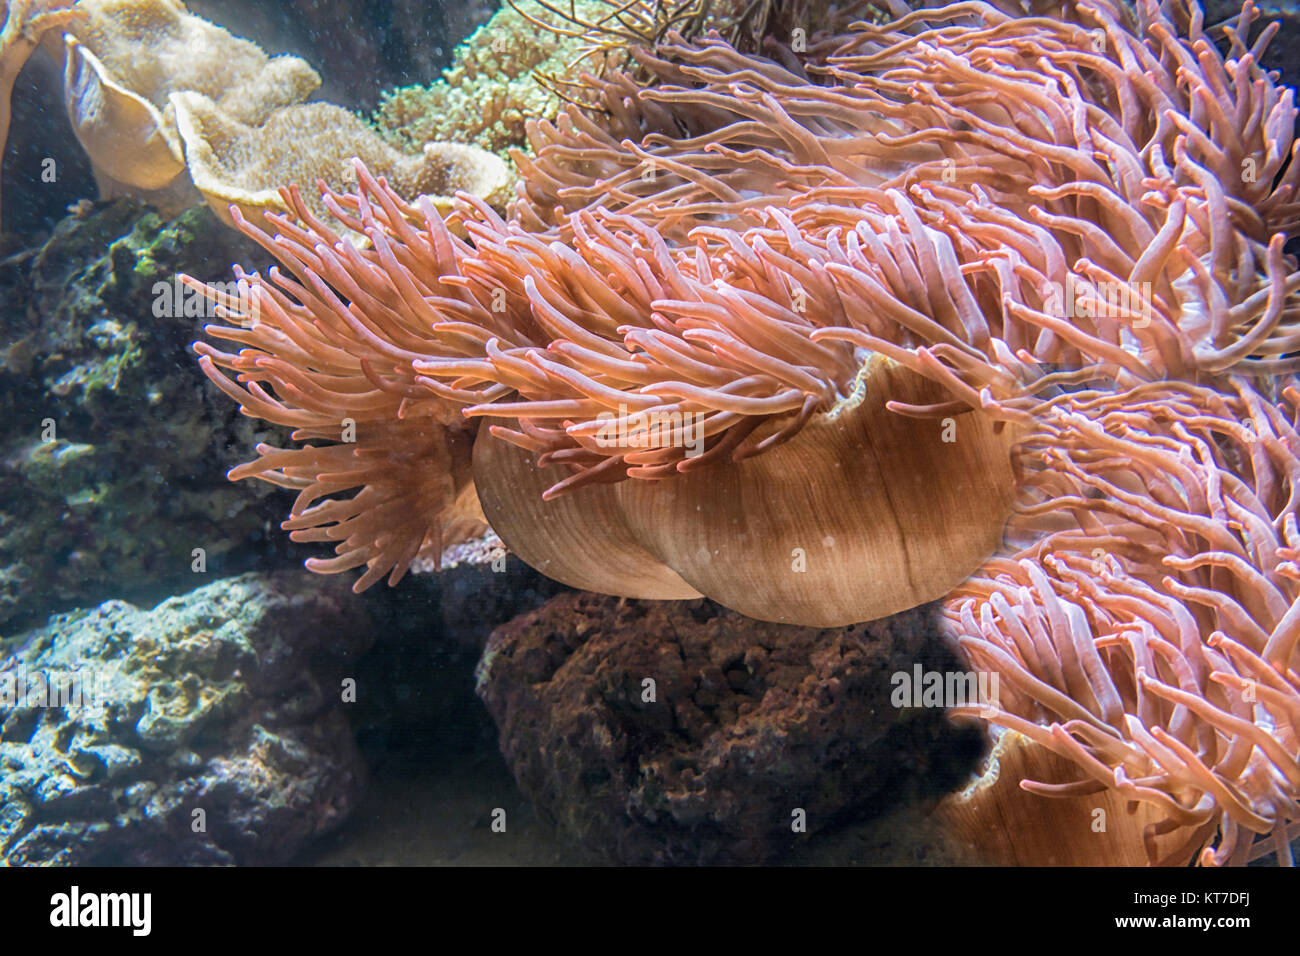 Schöne rosa Seeanemone mit vielen Tentakeln zum fang von plancton, Fischen, Krebsen oder Schnecken. Unterwasseraufnahme. Foto Stock